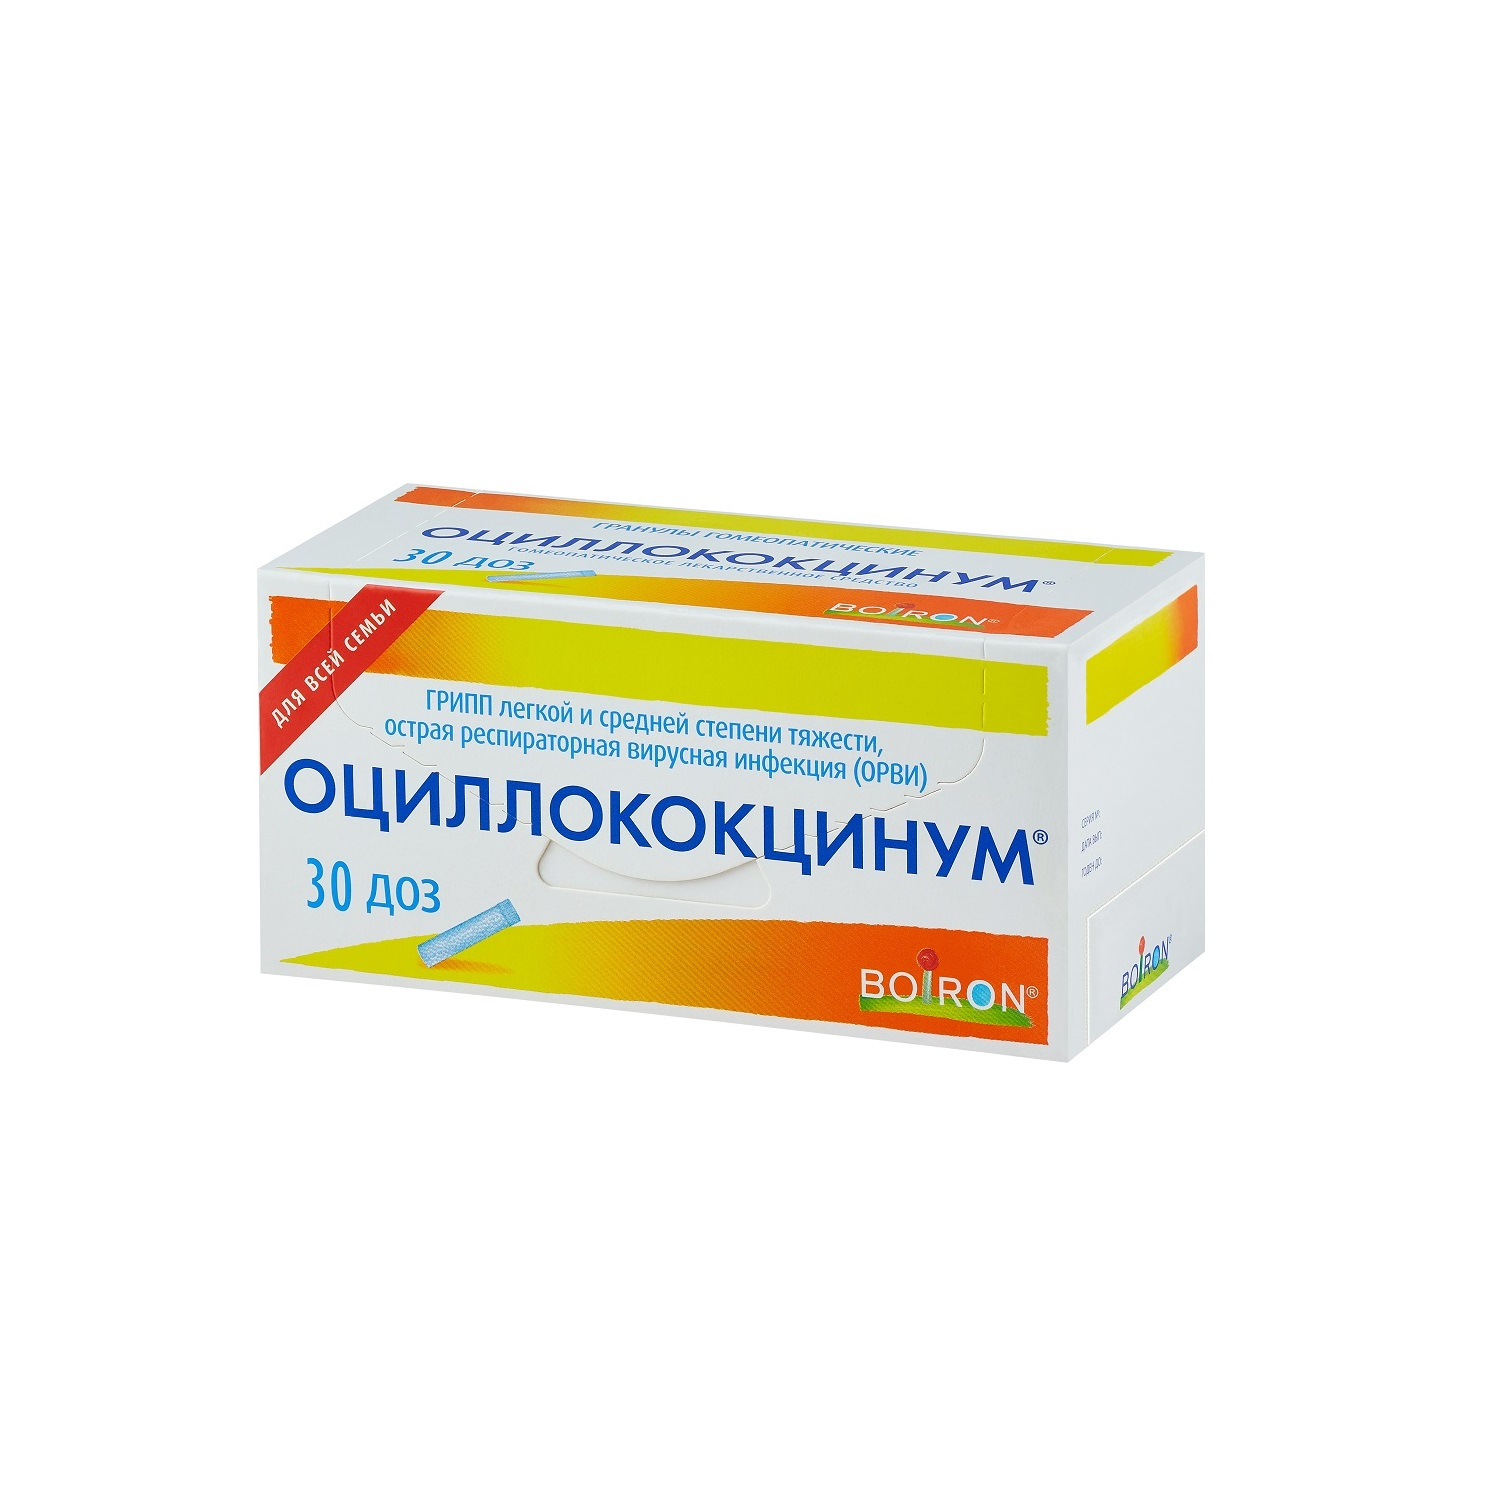 Купить Оциллококцинум гранулы 1 г 1 доз 30 шт., Boiron